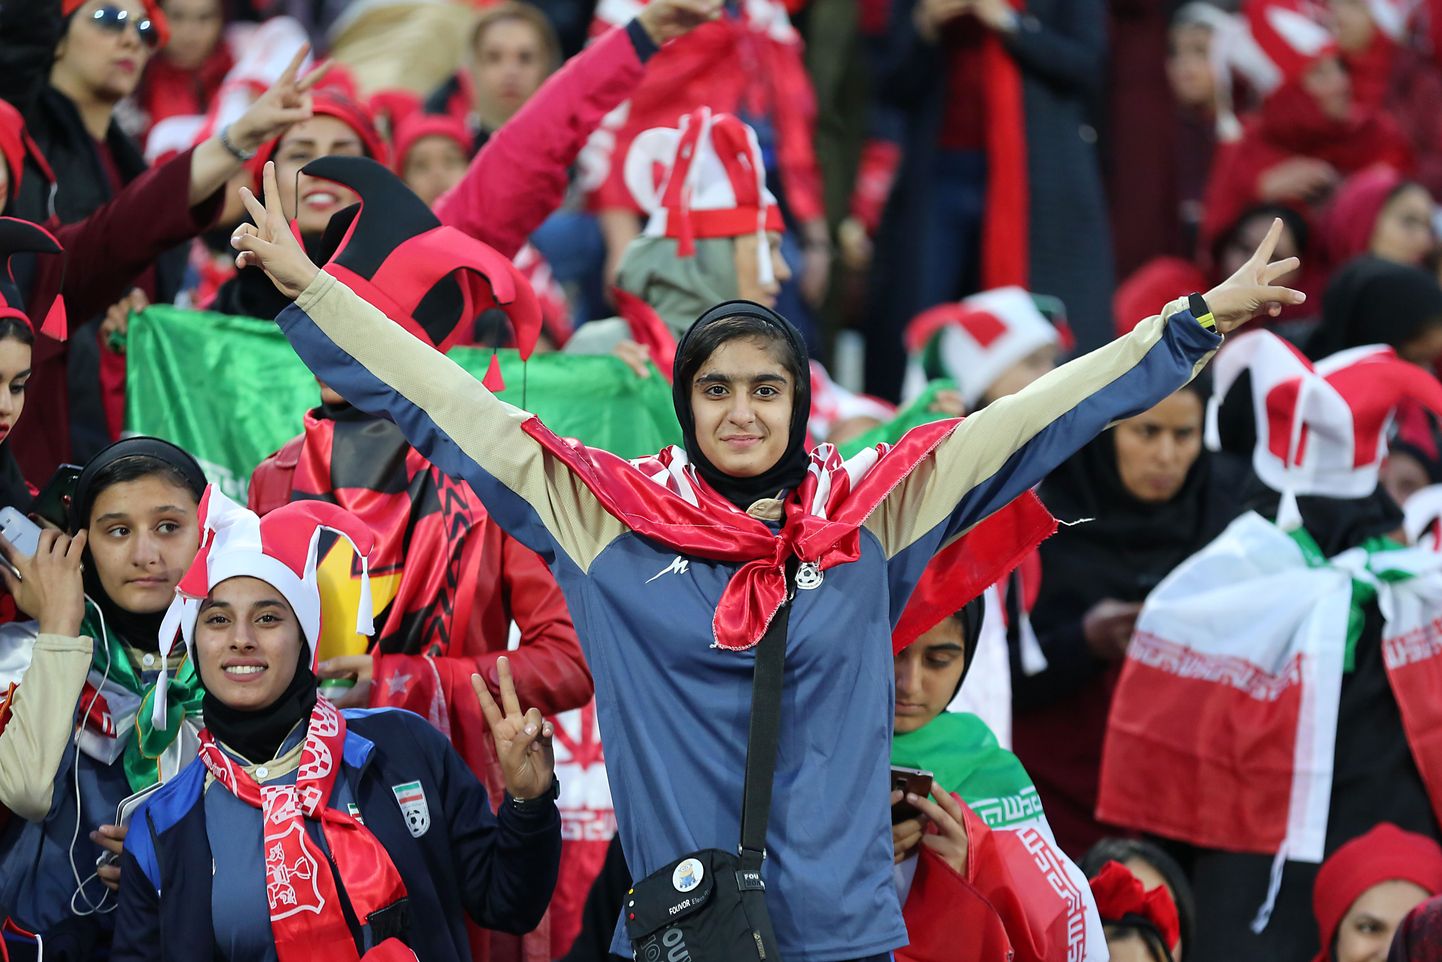 Jalgpallimeeskonna Persepolis naisfänn eilsel matšil.